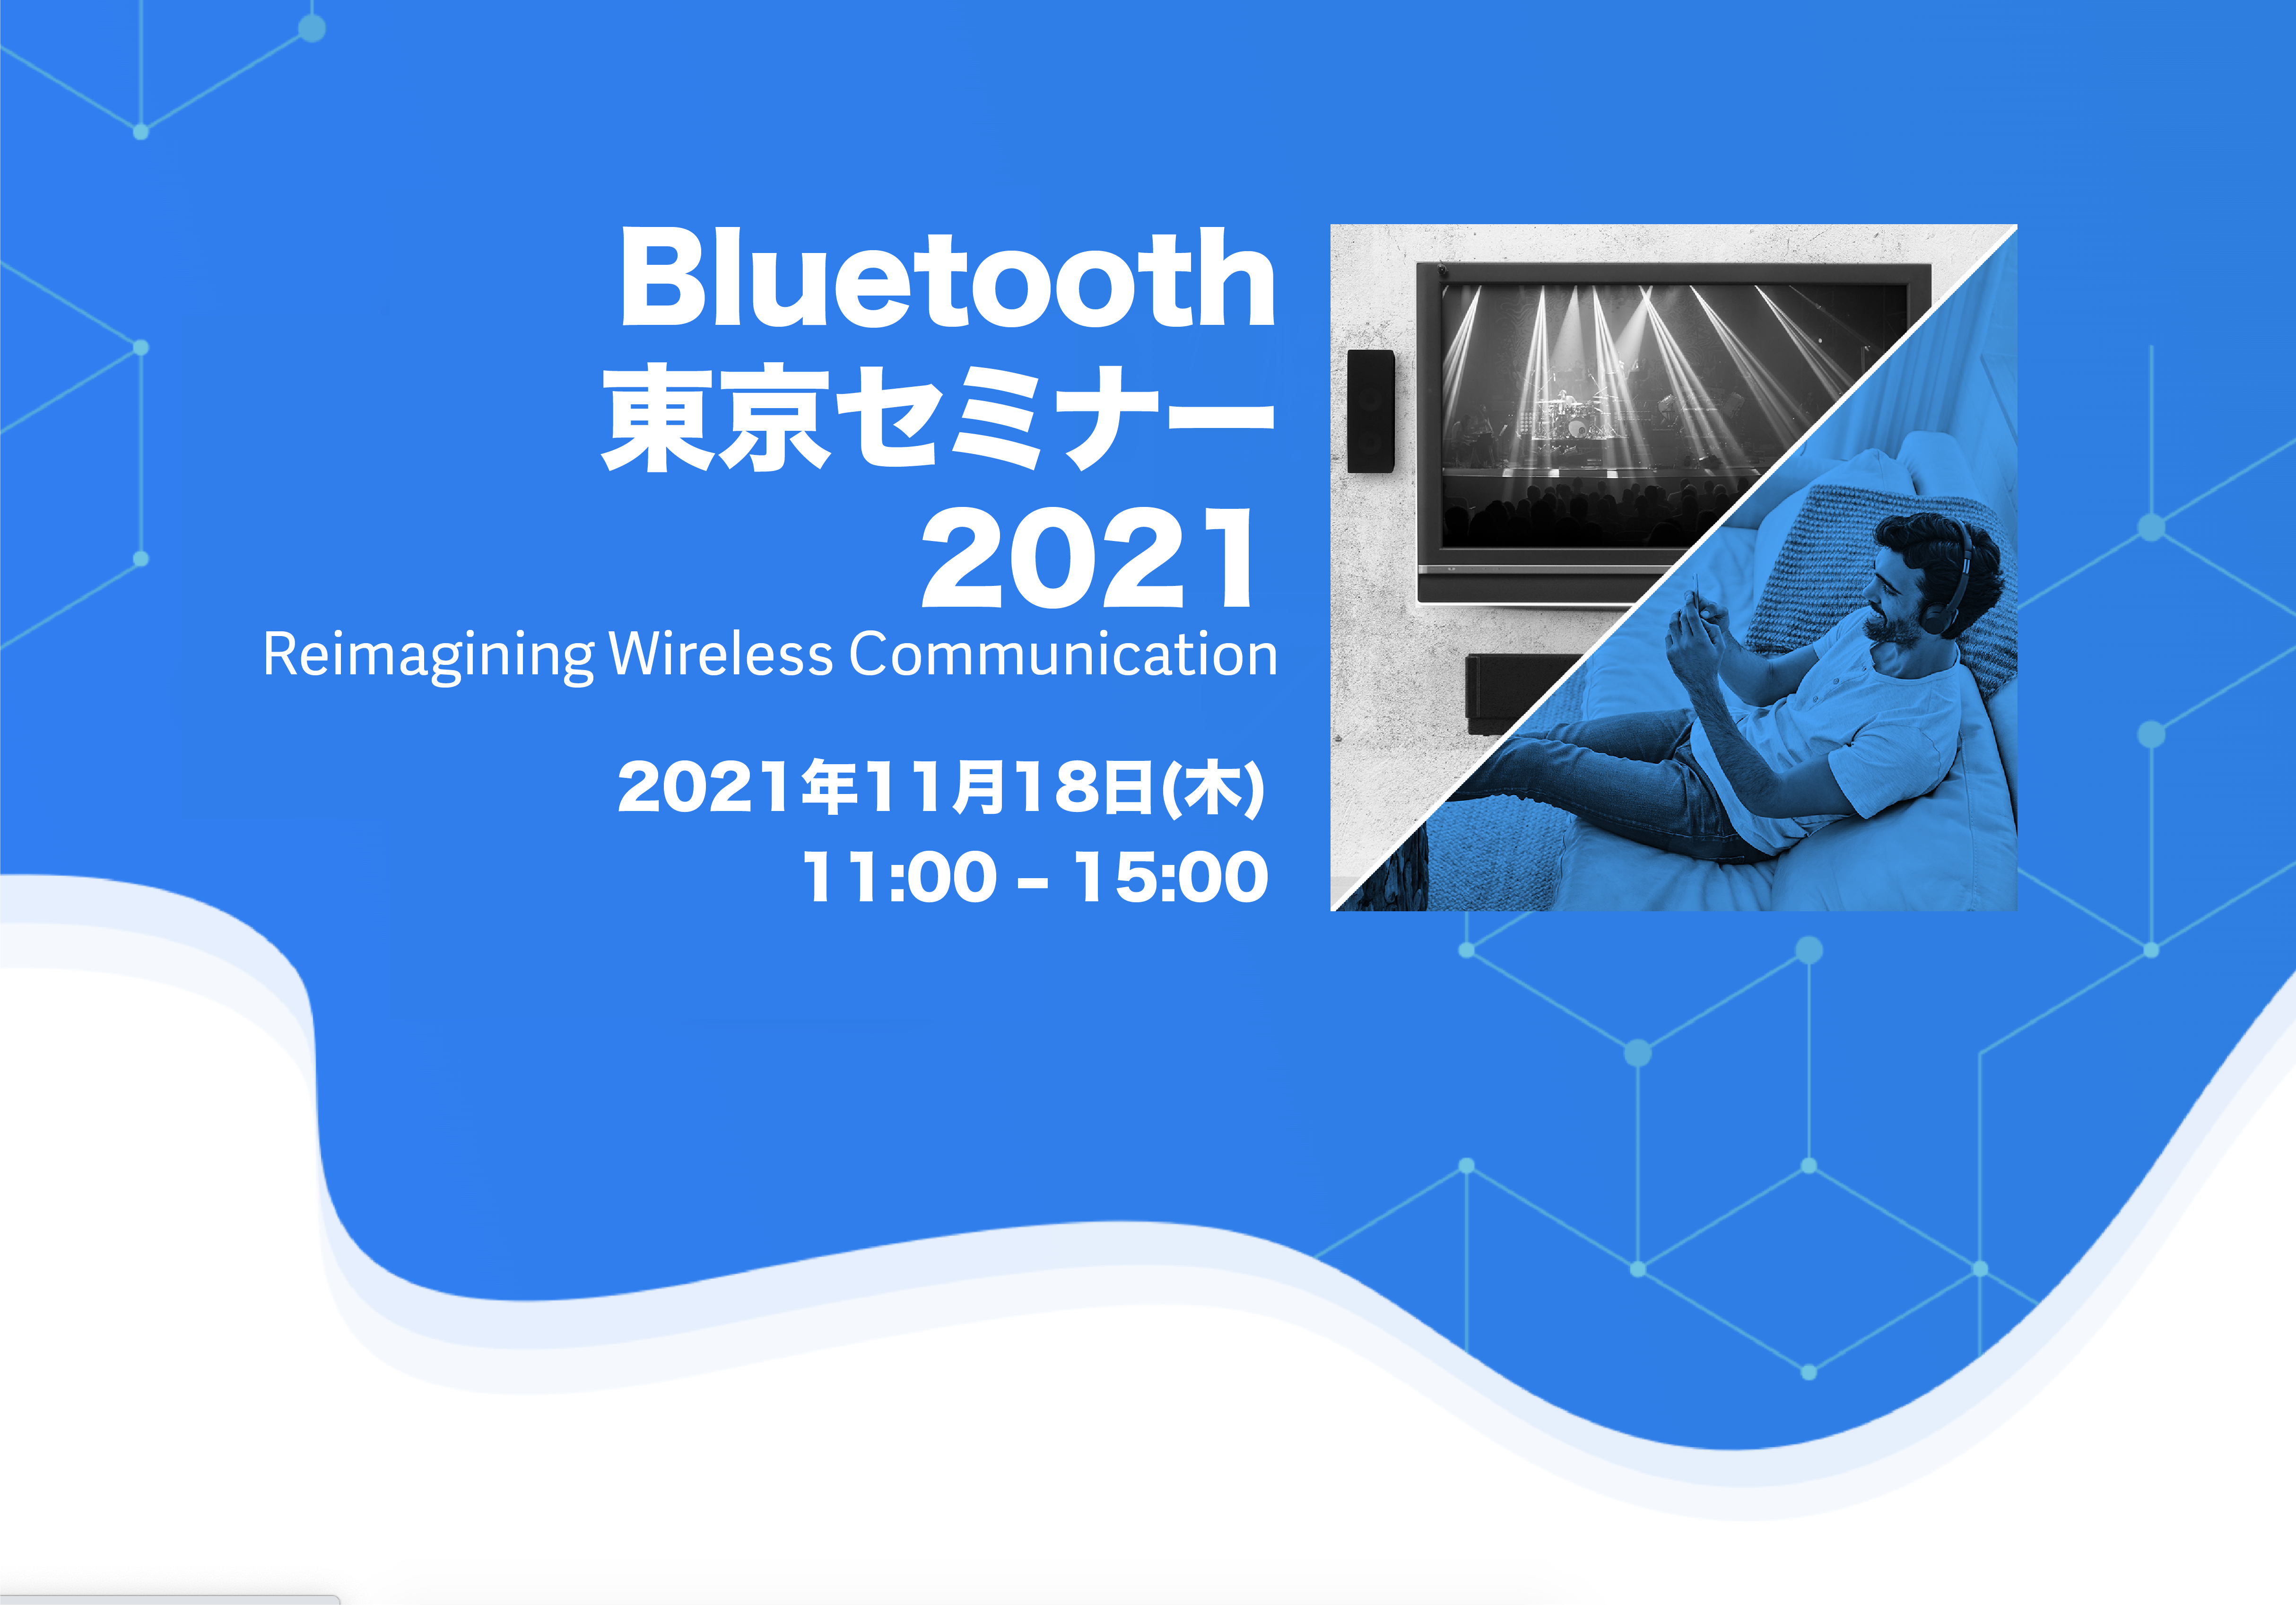 Bluetooth SIG主催の「Bluetooth 東京セミナー2021」にエンジニア高橋が登壇します